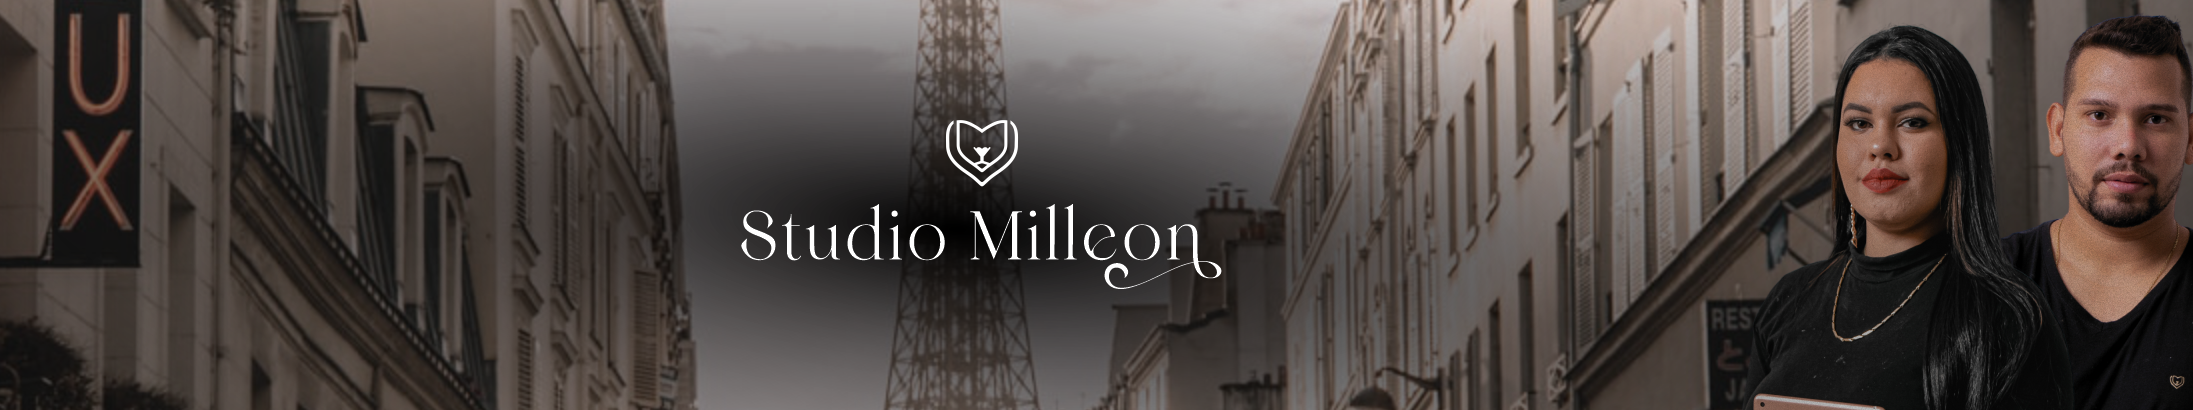 Profil-Banner von Studio Milleon